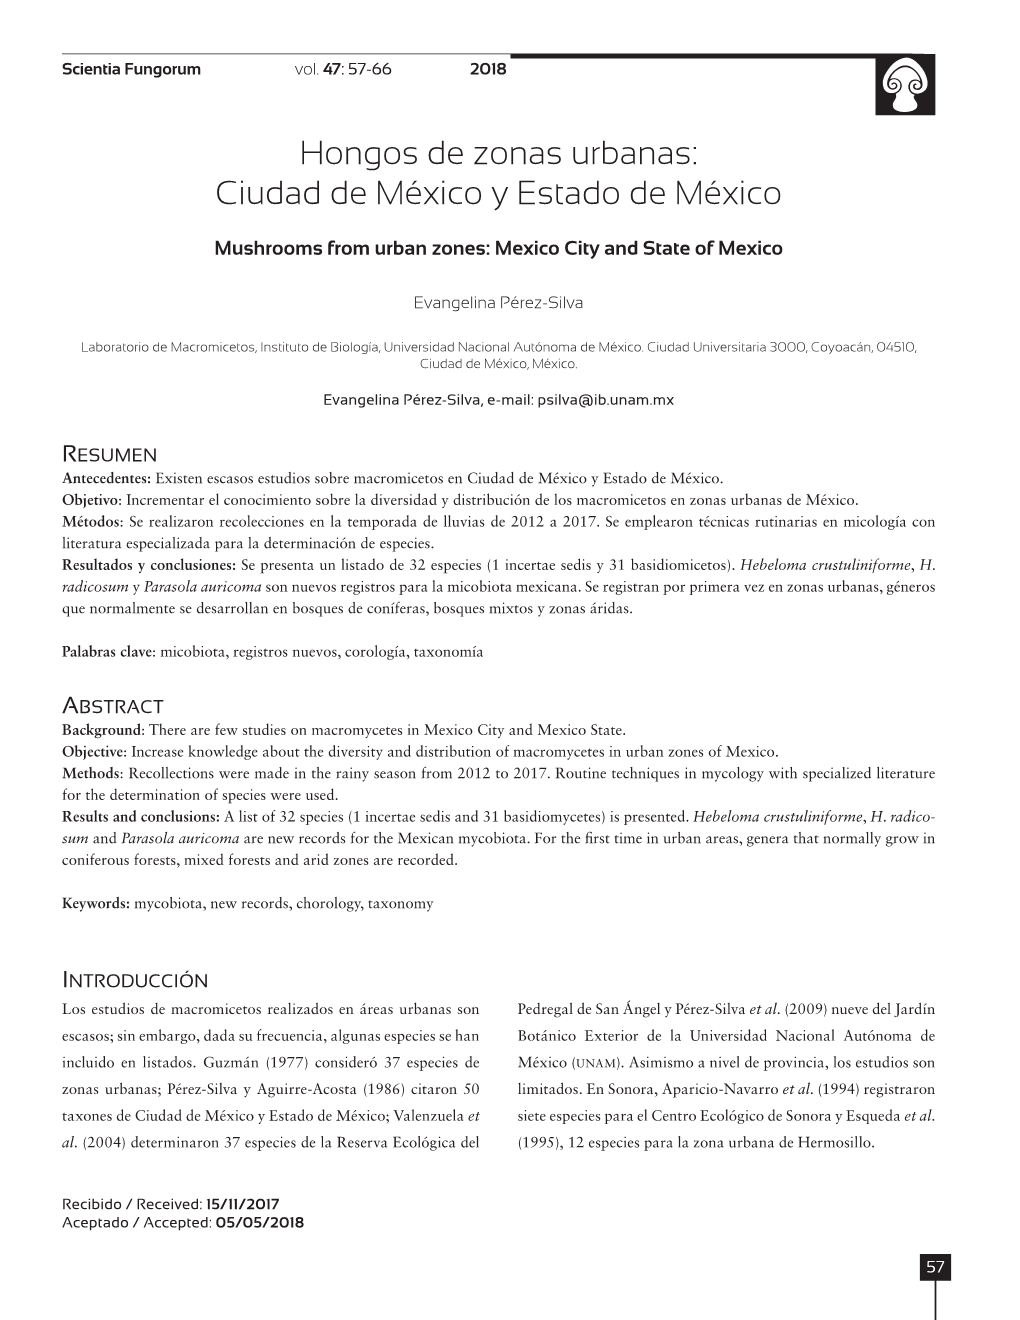 Hongos De Zonas Urbanas: Ciudad De México Y Estado De México